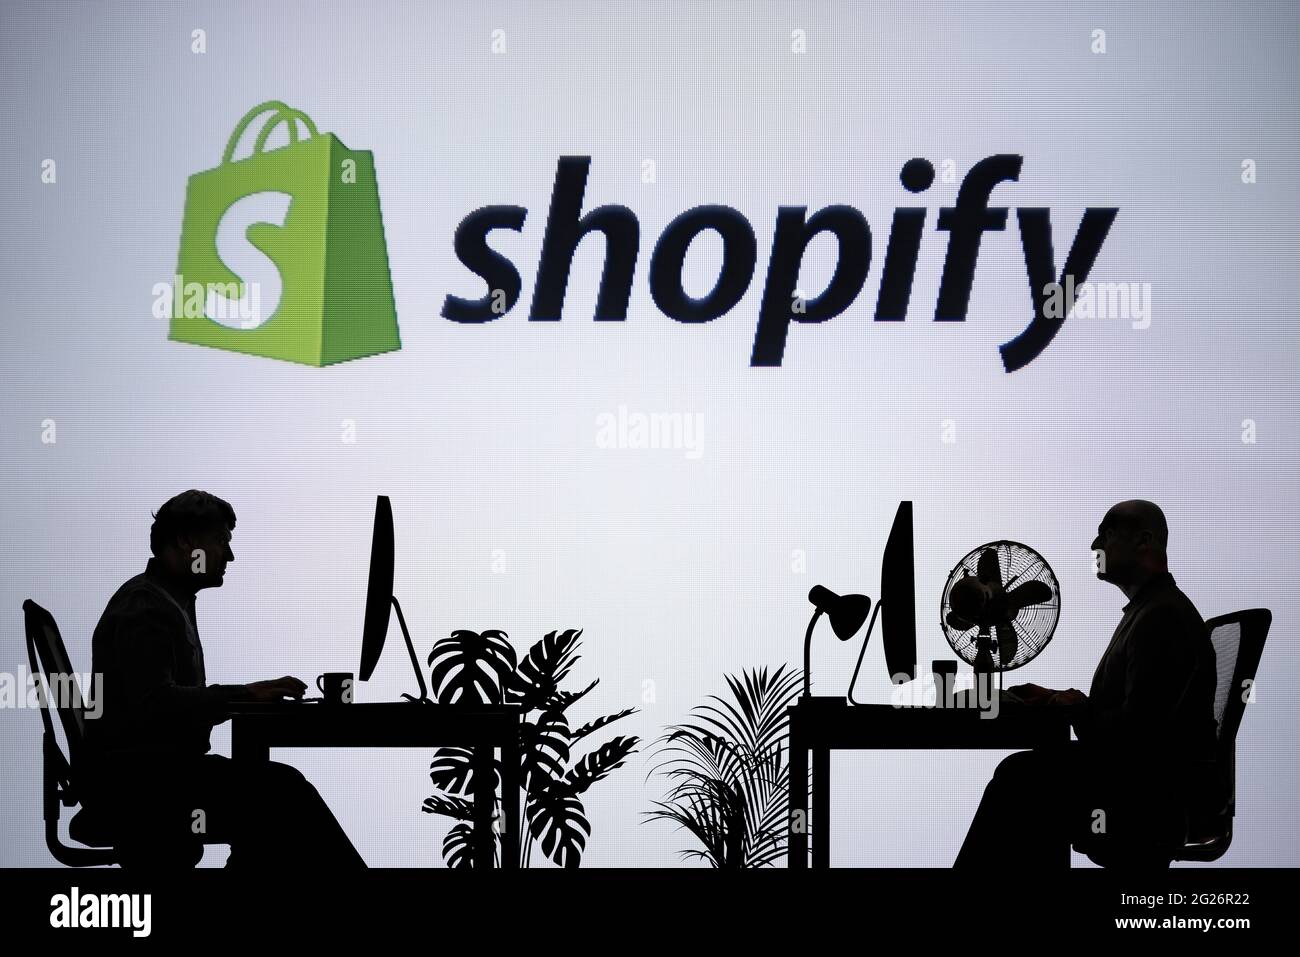 Le logo Shopify est visible sur un écran LED en arrière-plan tandis que deux personnes silhouetées travaillent dans un environnement de bureau (usage éditorial uniquement) Banque D'Images